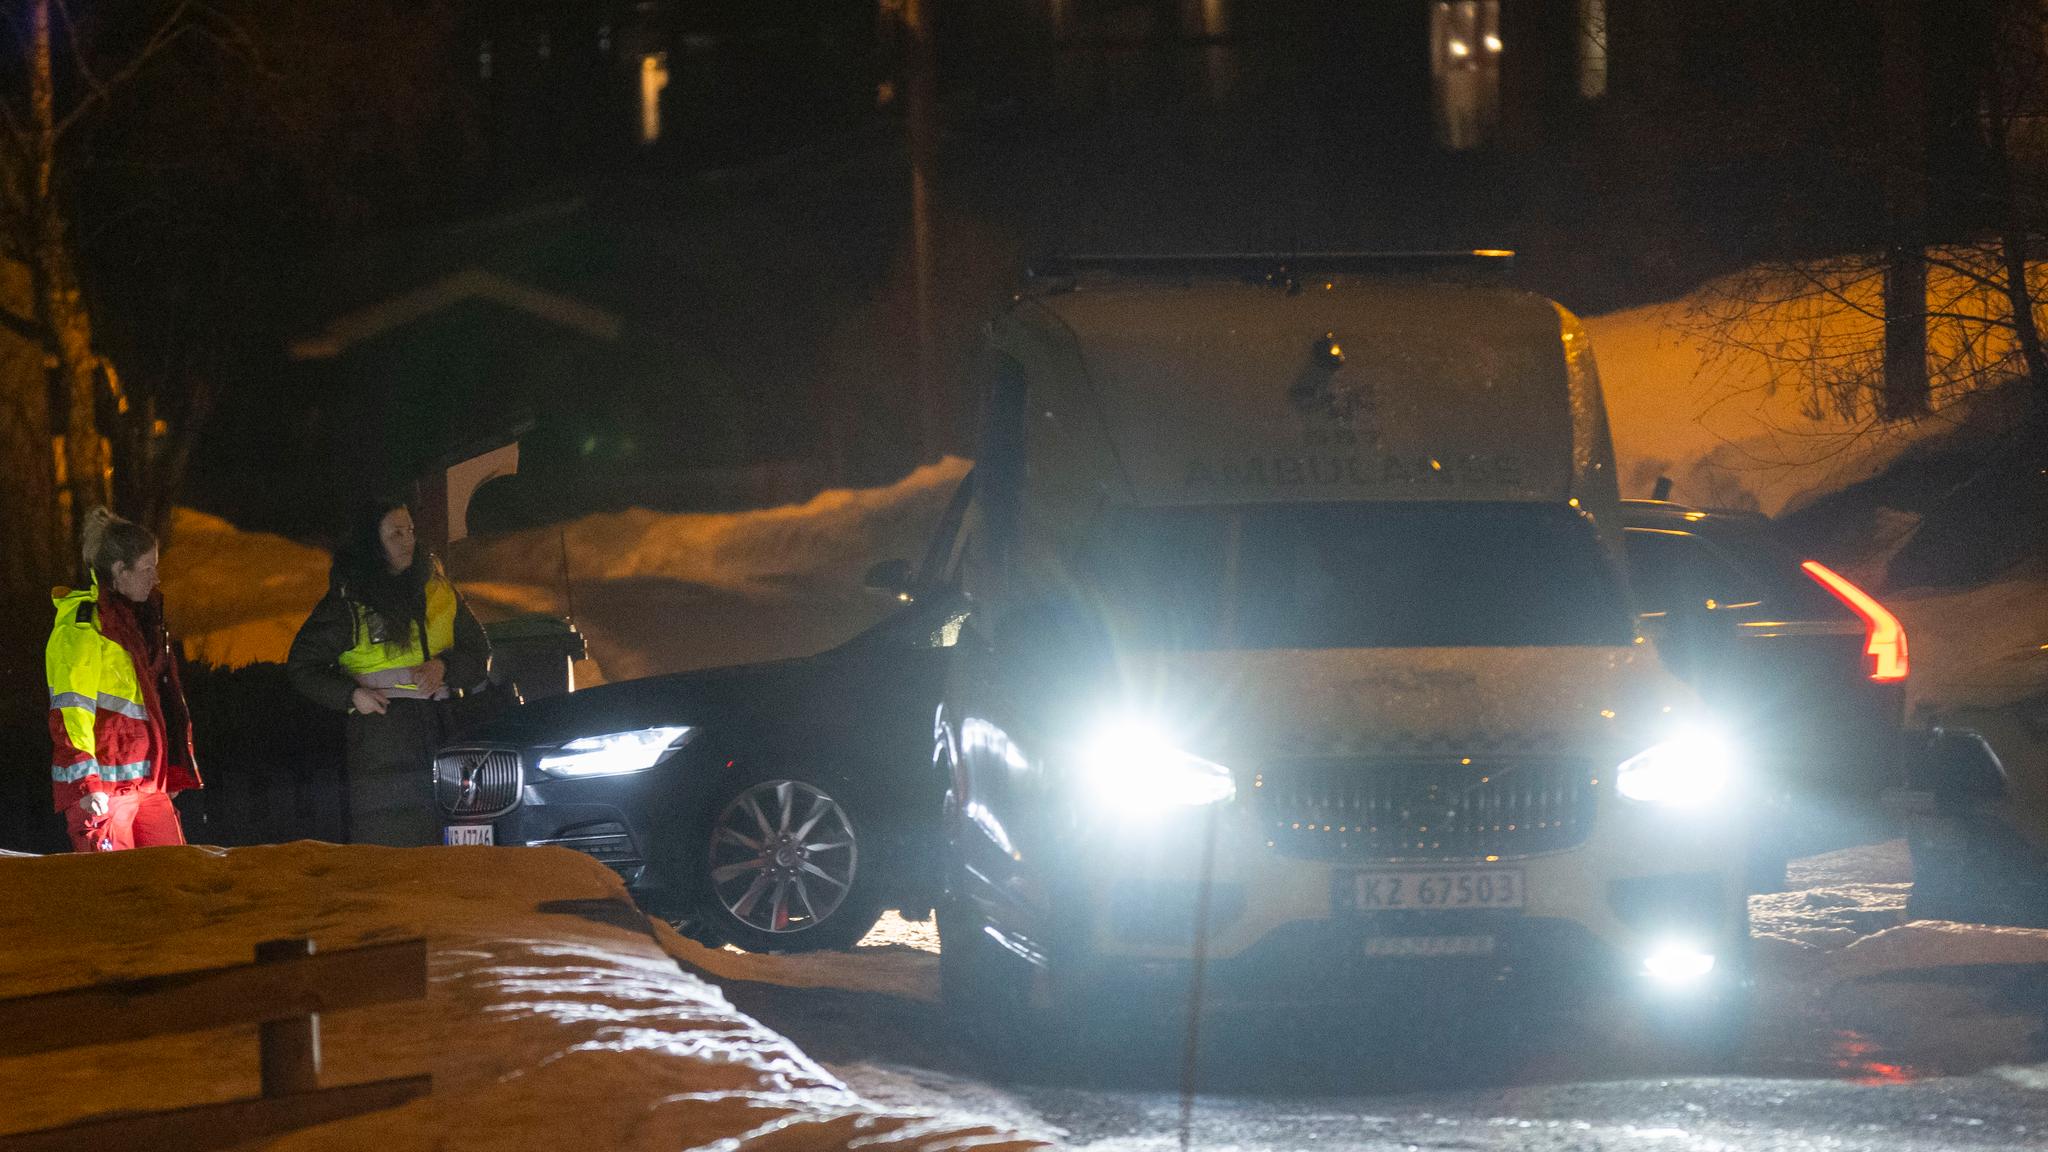 Fire funnet døde på adresse i Ål: – Dypt tragisk